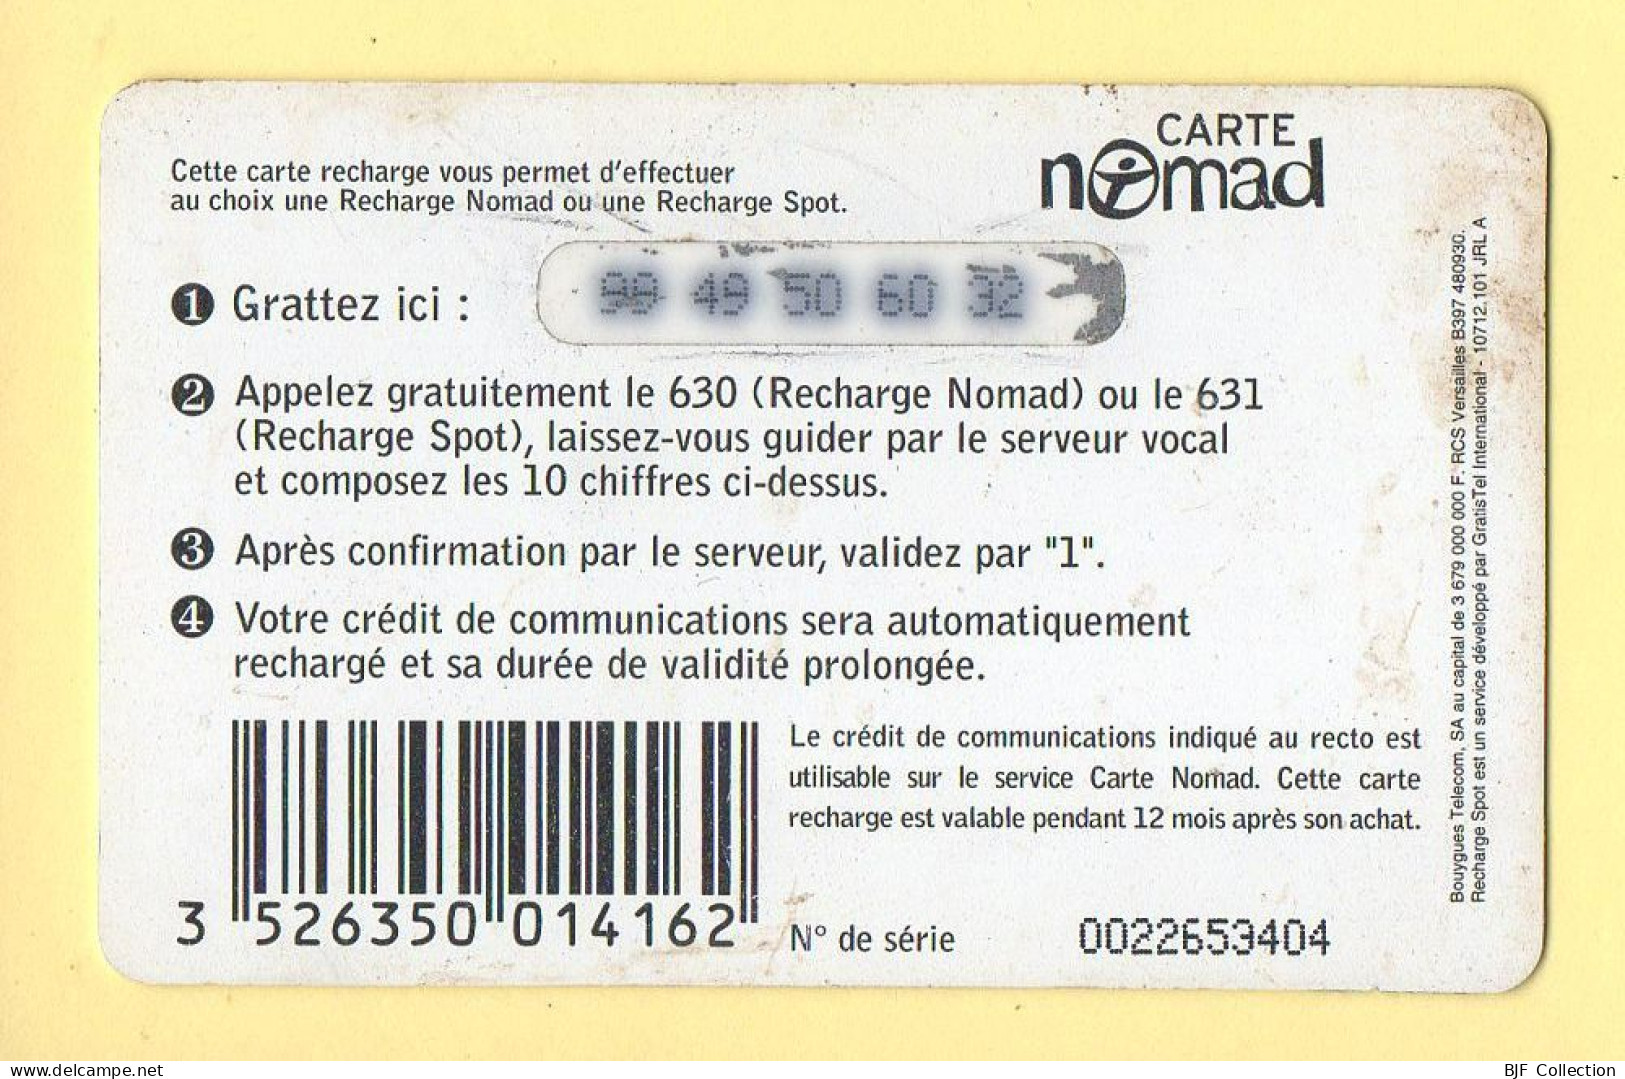 Carte Prépayée : NOMAD Ou SPOT SMALL / 95 Francs / Bouygues Telecom - Other & Unclassified